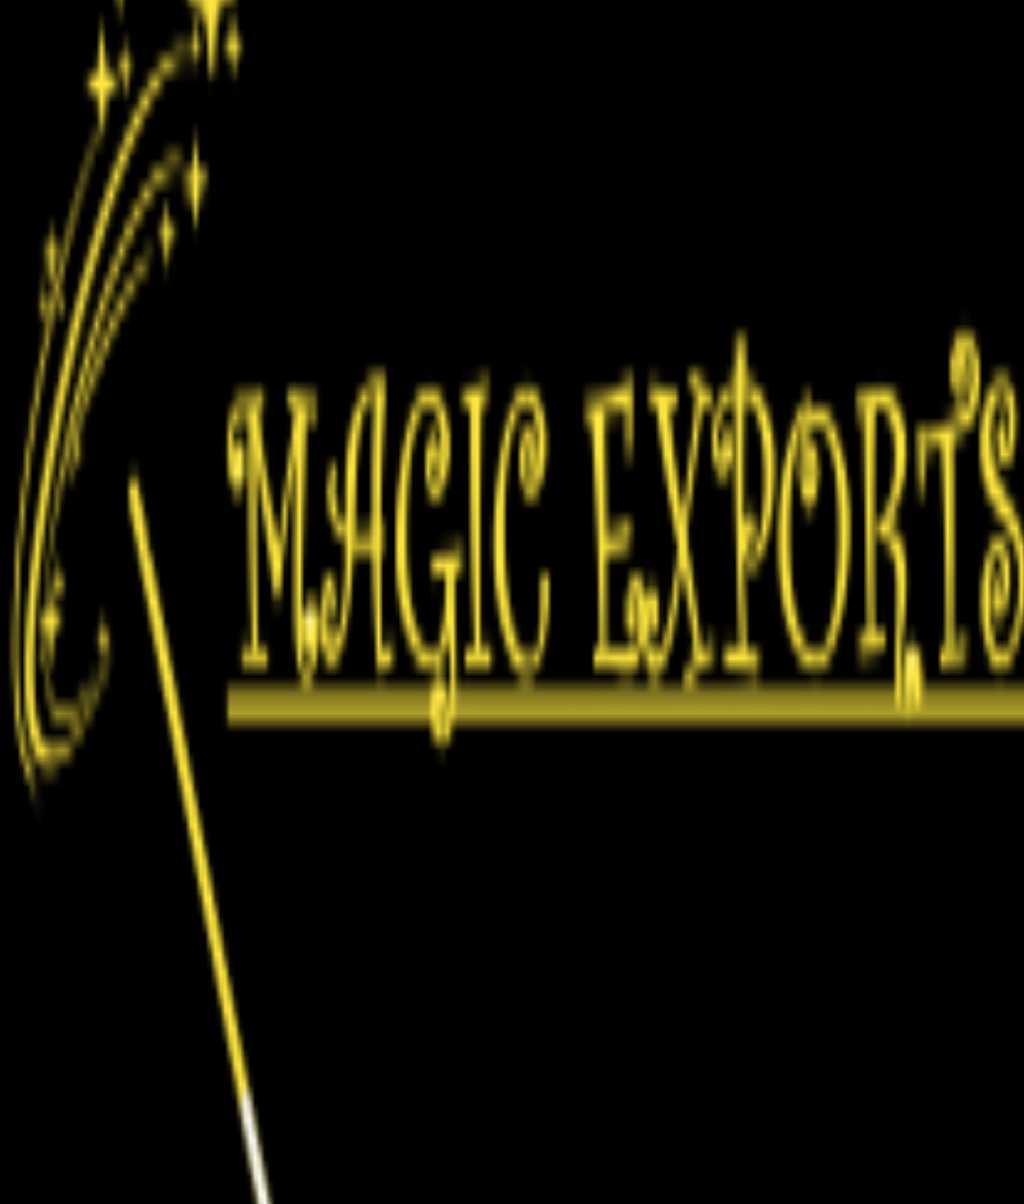 MAGIC EXPORTS